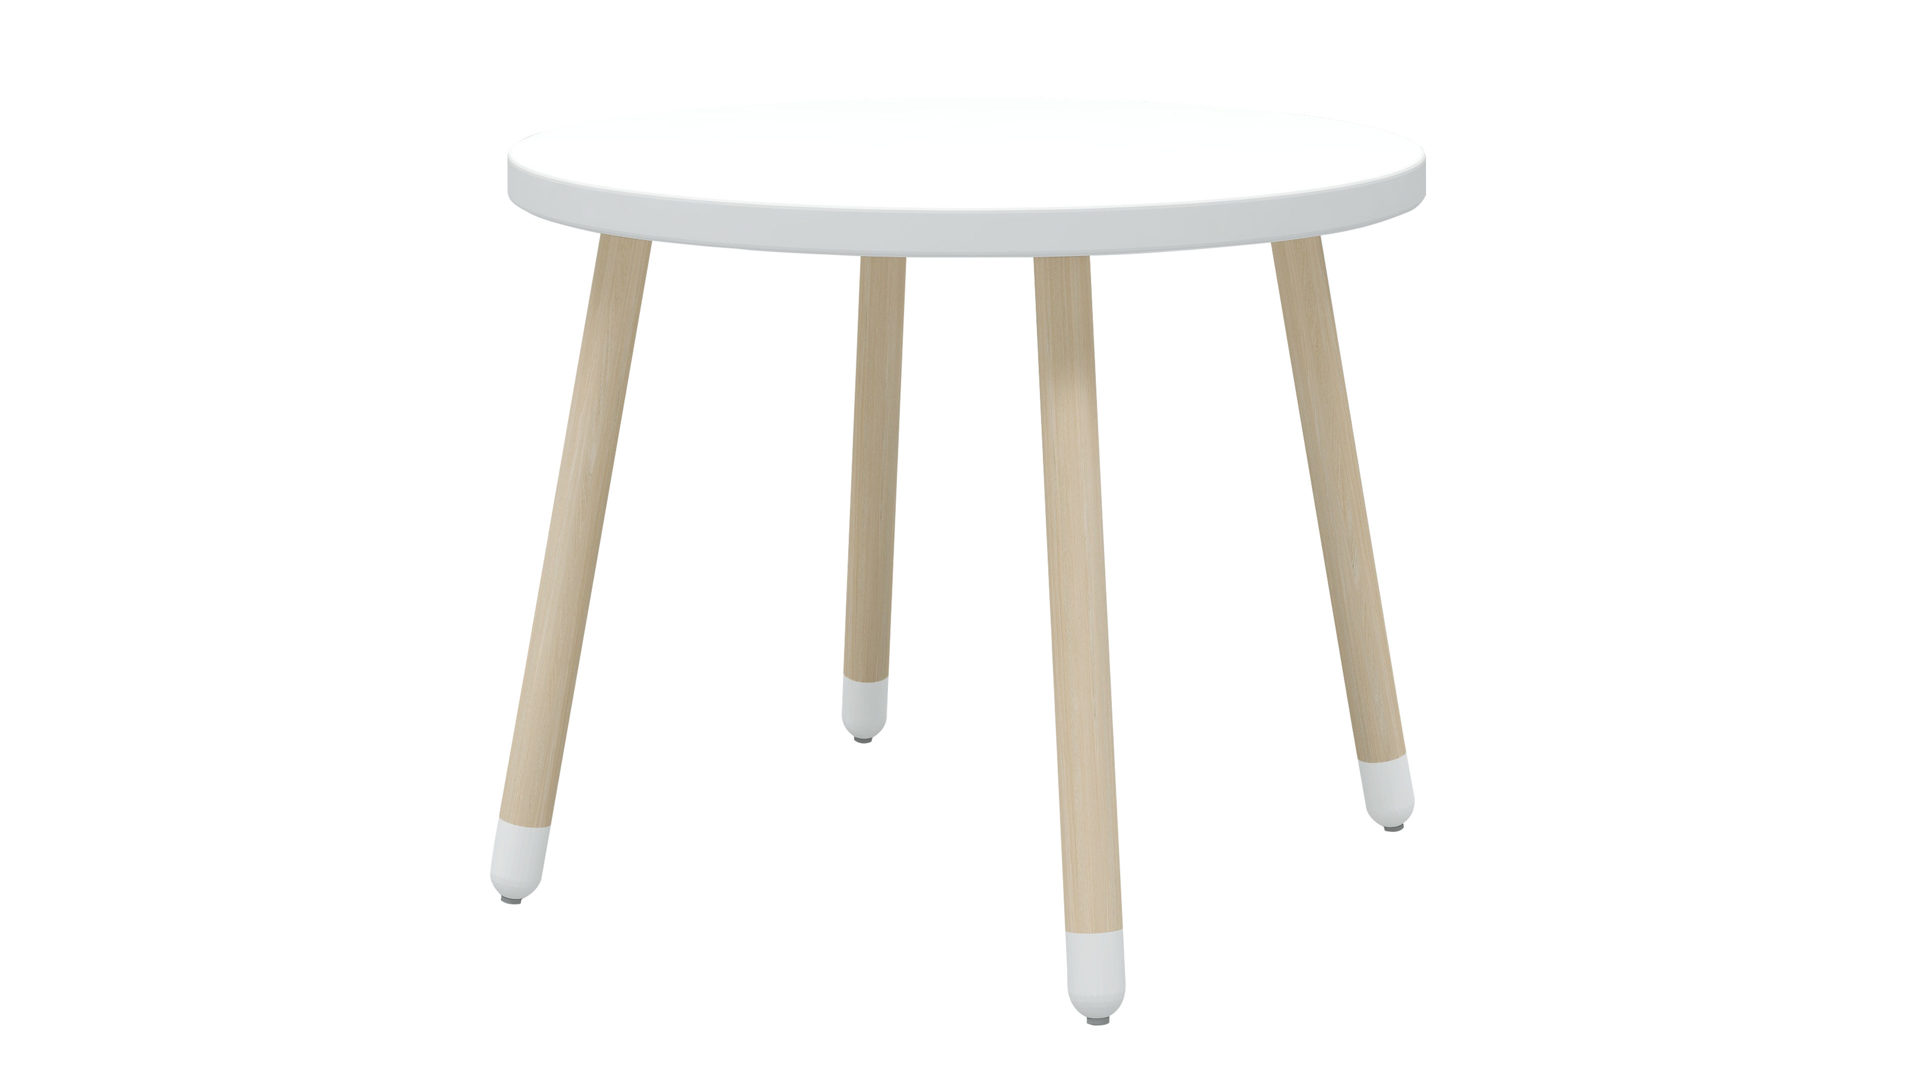 Tisch Flexa® aus Holz in Weiß FLEXA® Kindermöbel Serie Dots - Tisch Weiß & Esche - Durchmesser ca. 60 cm